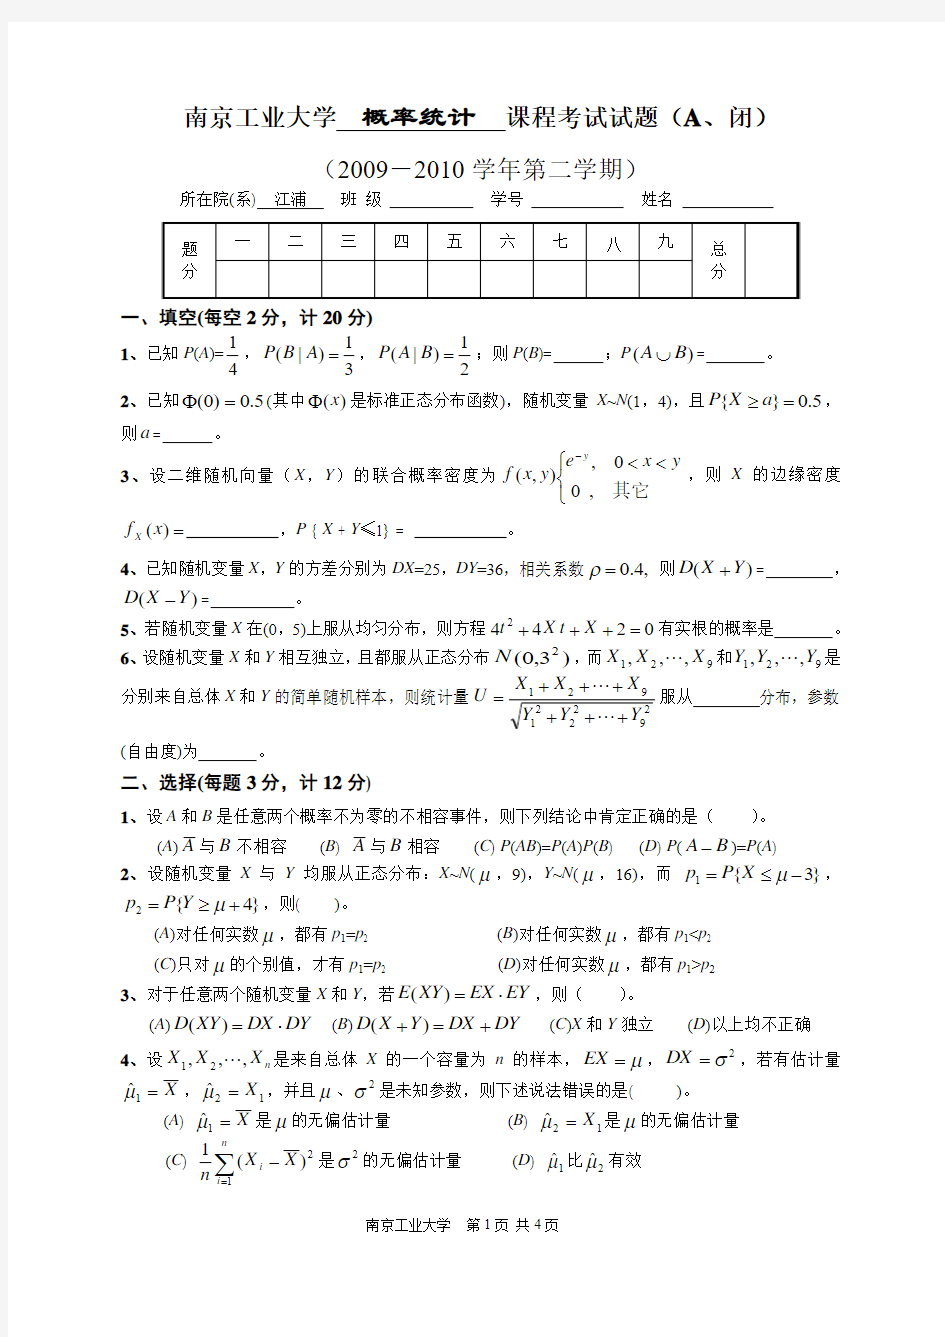 南京工业大学概率统计(09~10(2)A江浦)课程考试试题